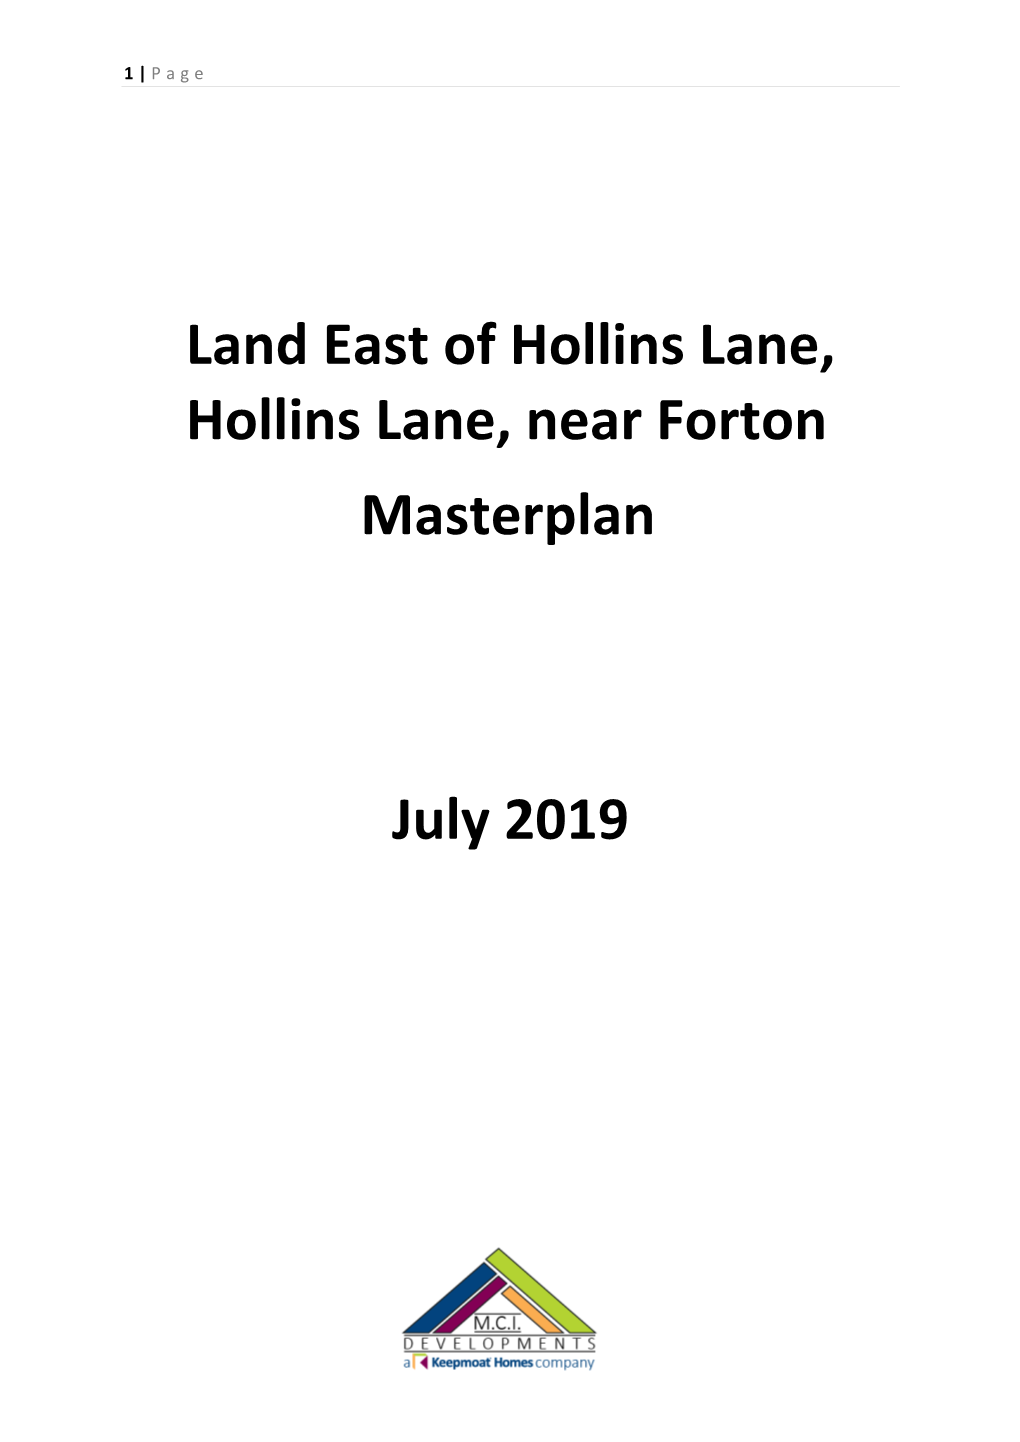 Hollins Lane Masterplan Final Version